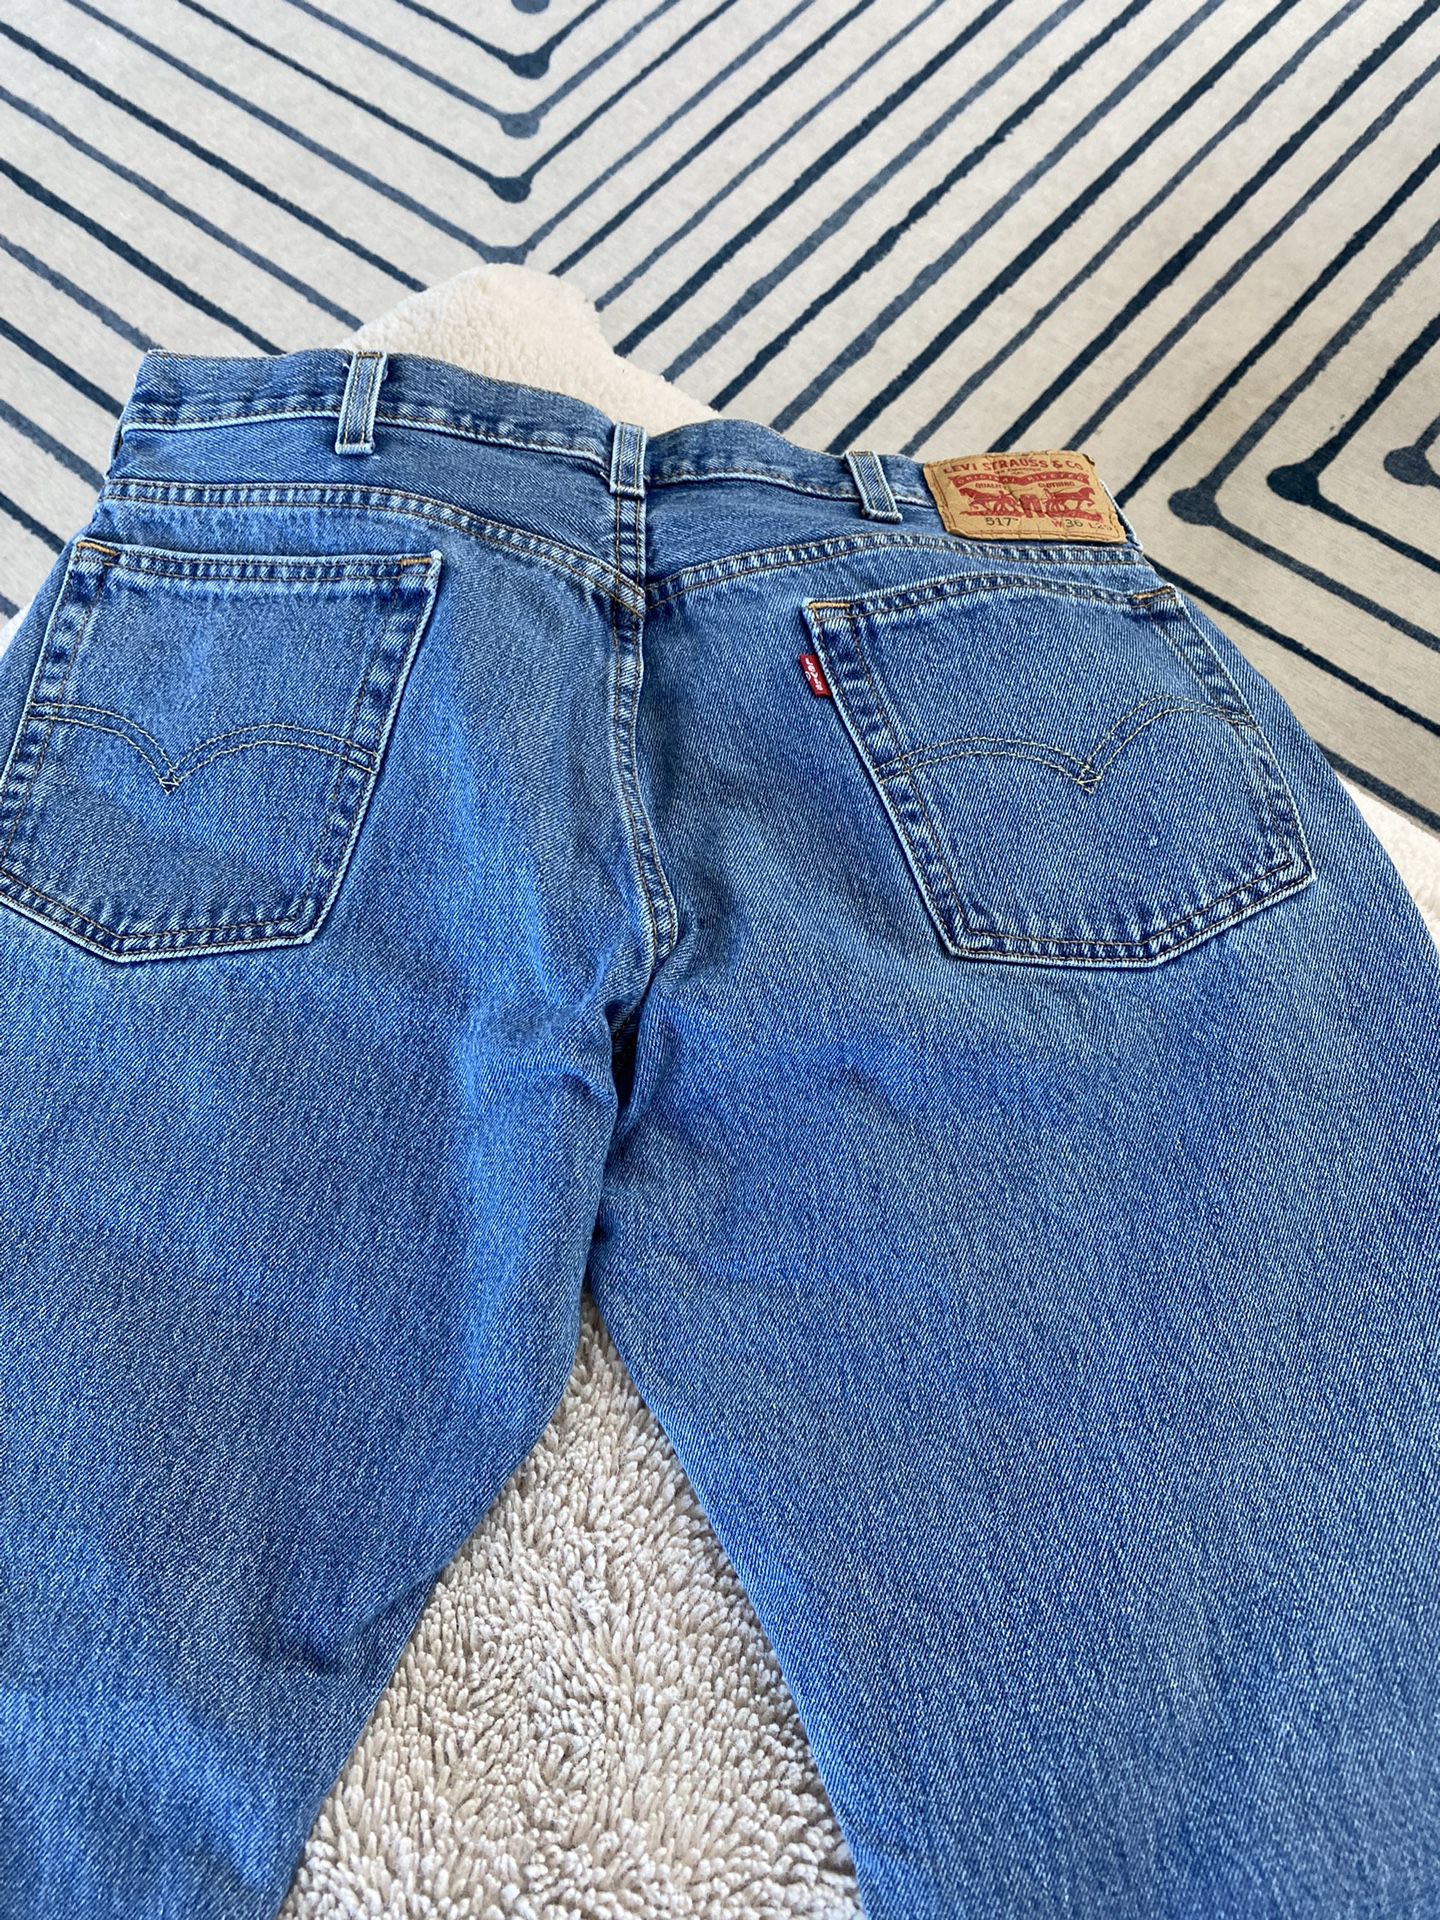 Levi’s 517 jeans